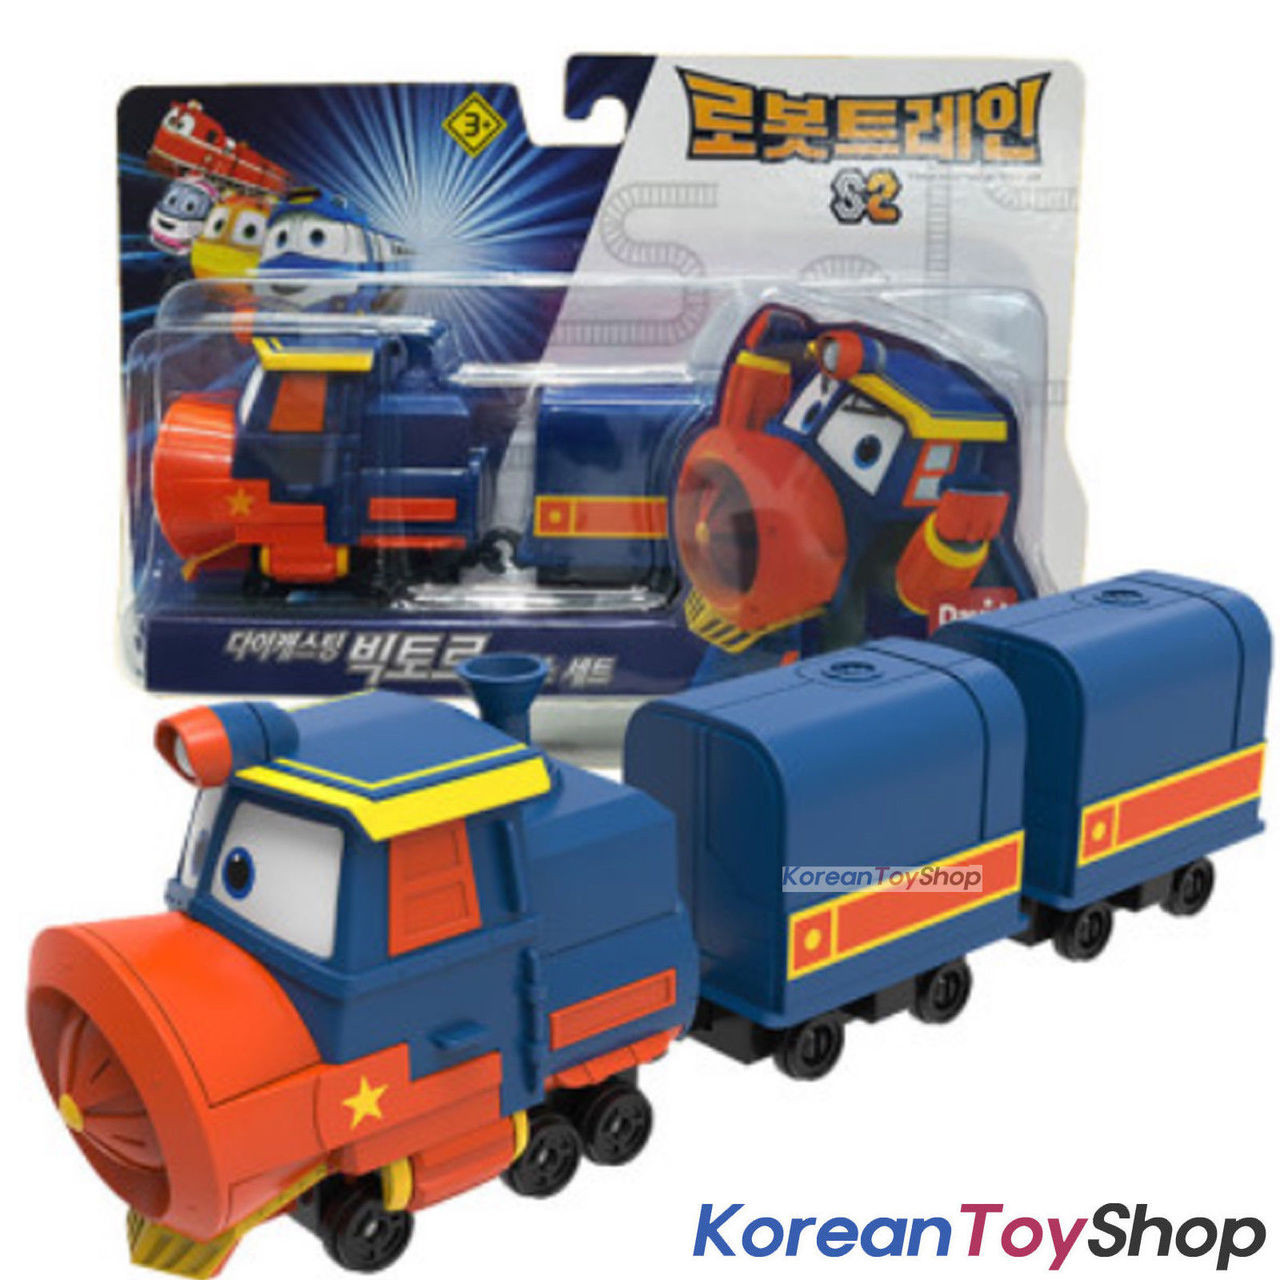 mini toy train